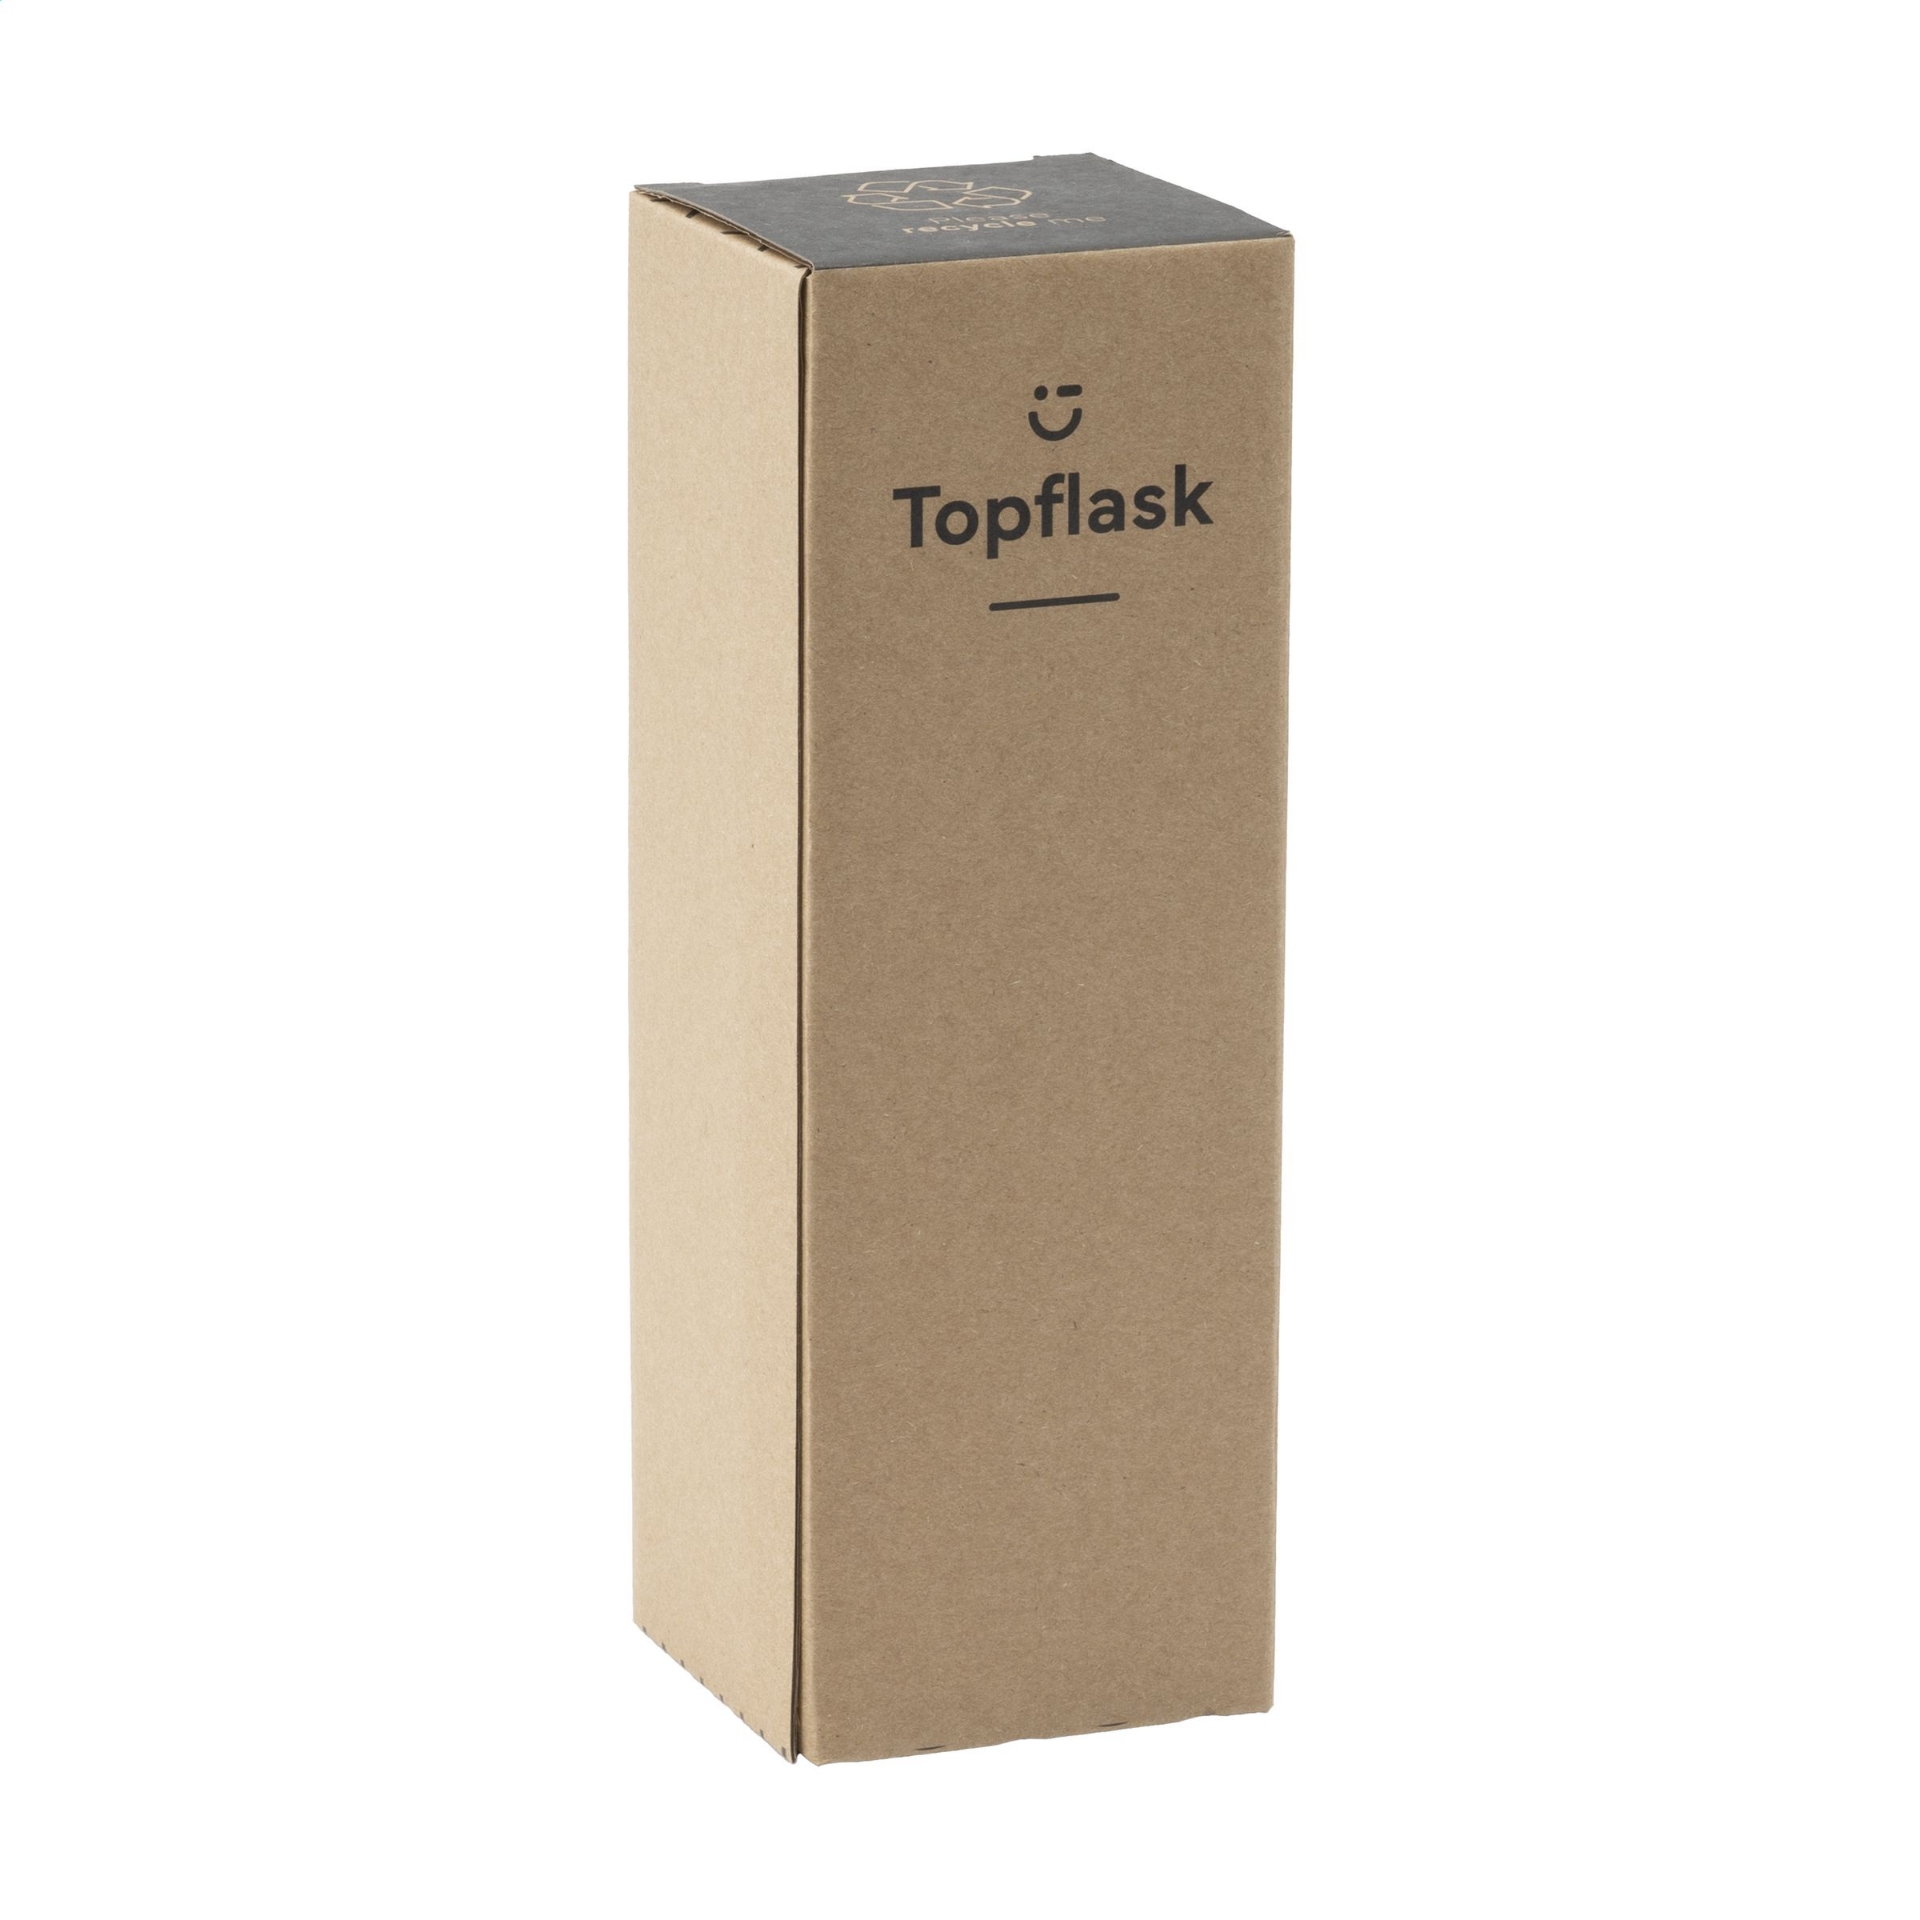 topflask packaging